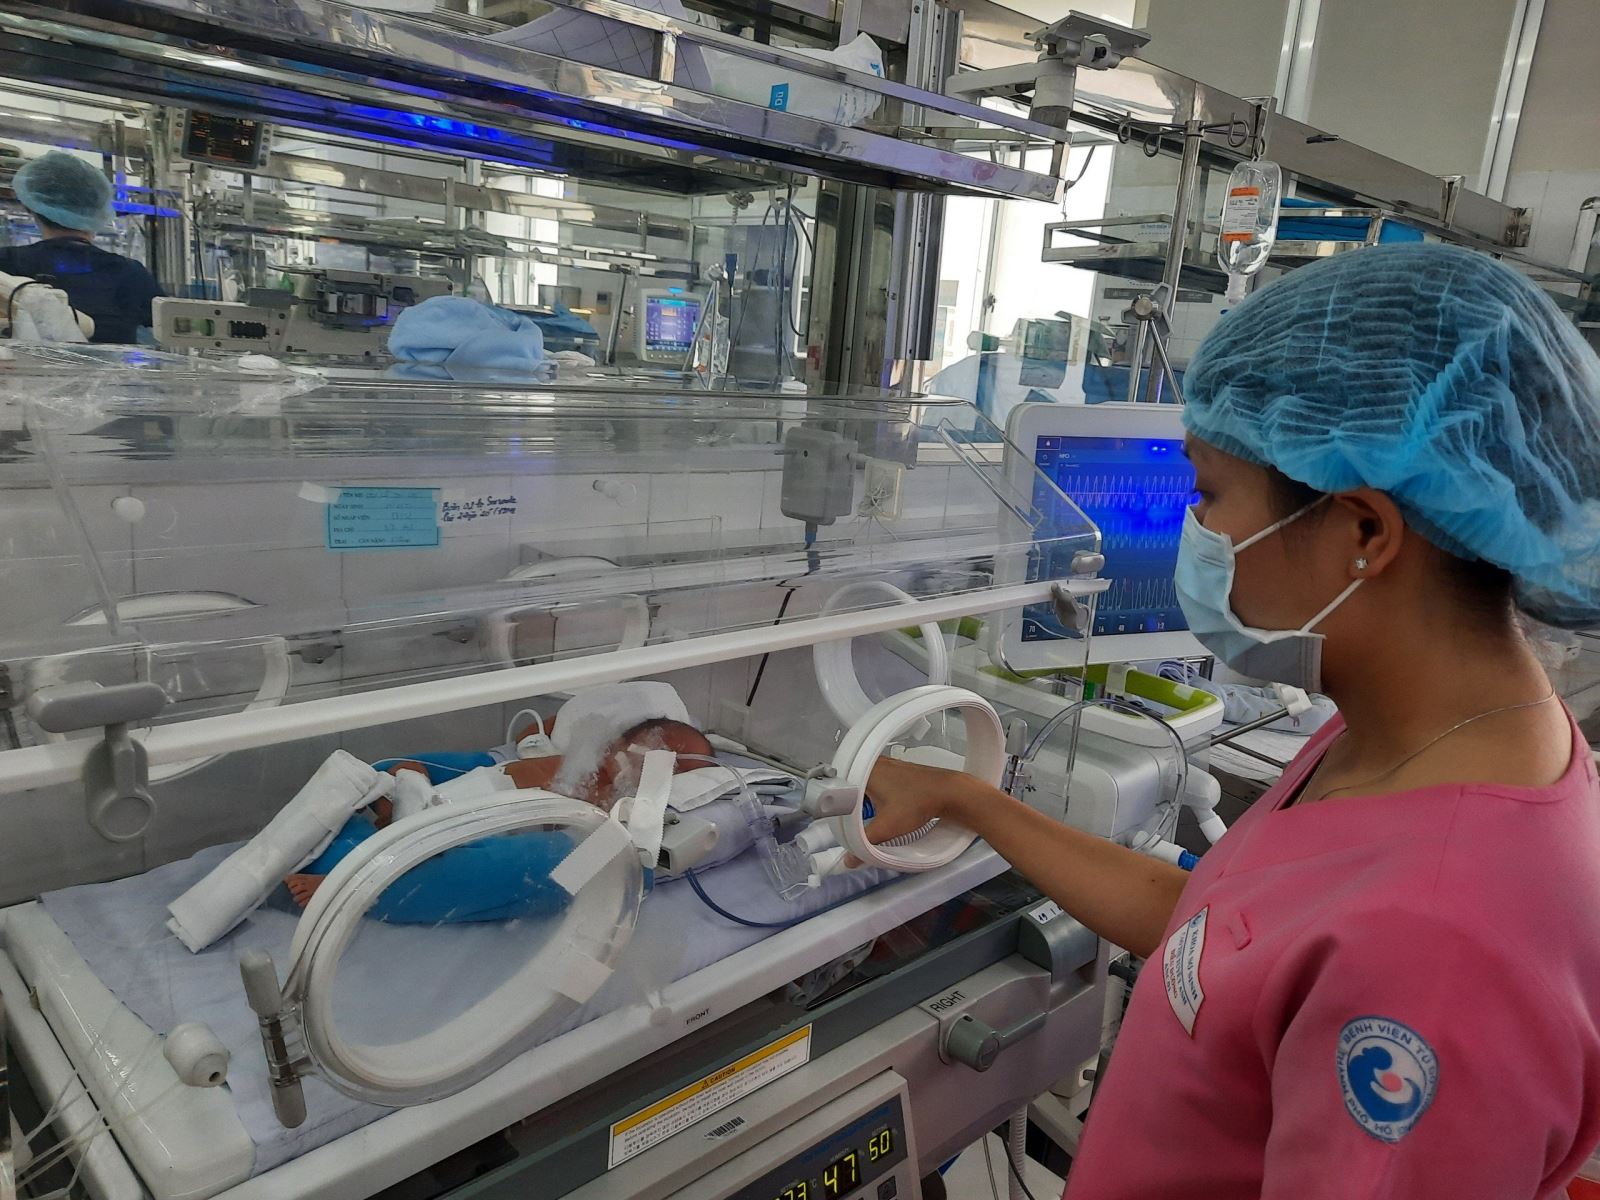 TP Hồ Chí Minh: Báo động đỏ liên viện cứu sống hai mẹ con sản phụ bị sản giật nguy kịch - Ảnh 1.